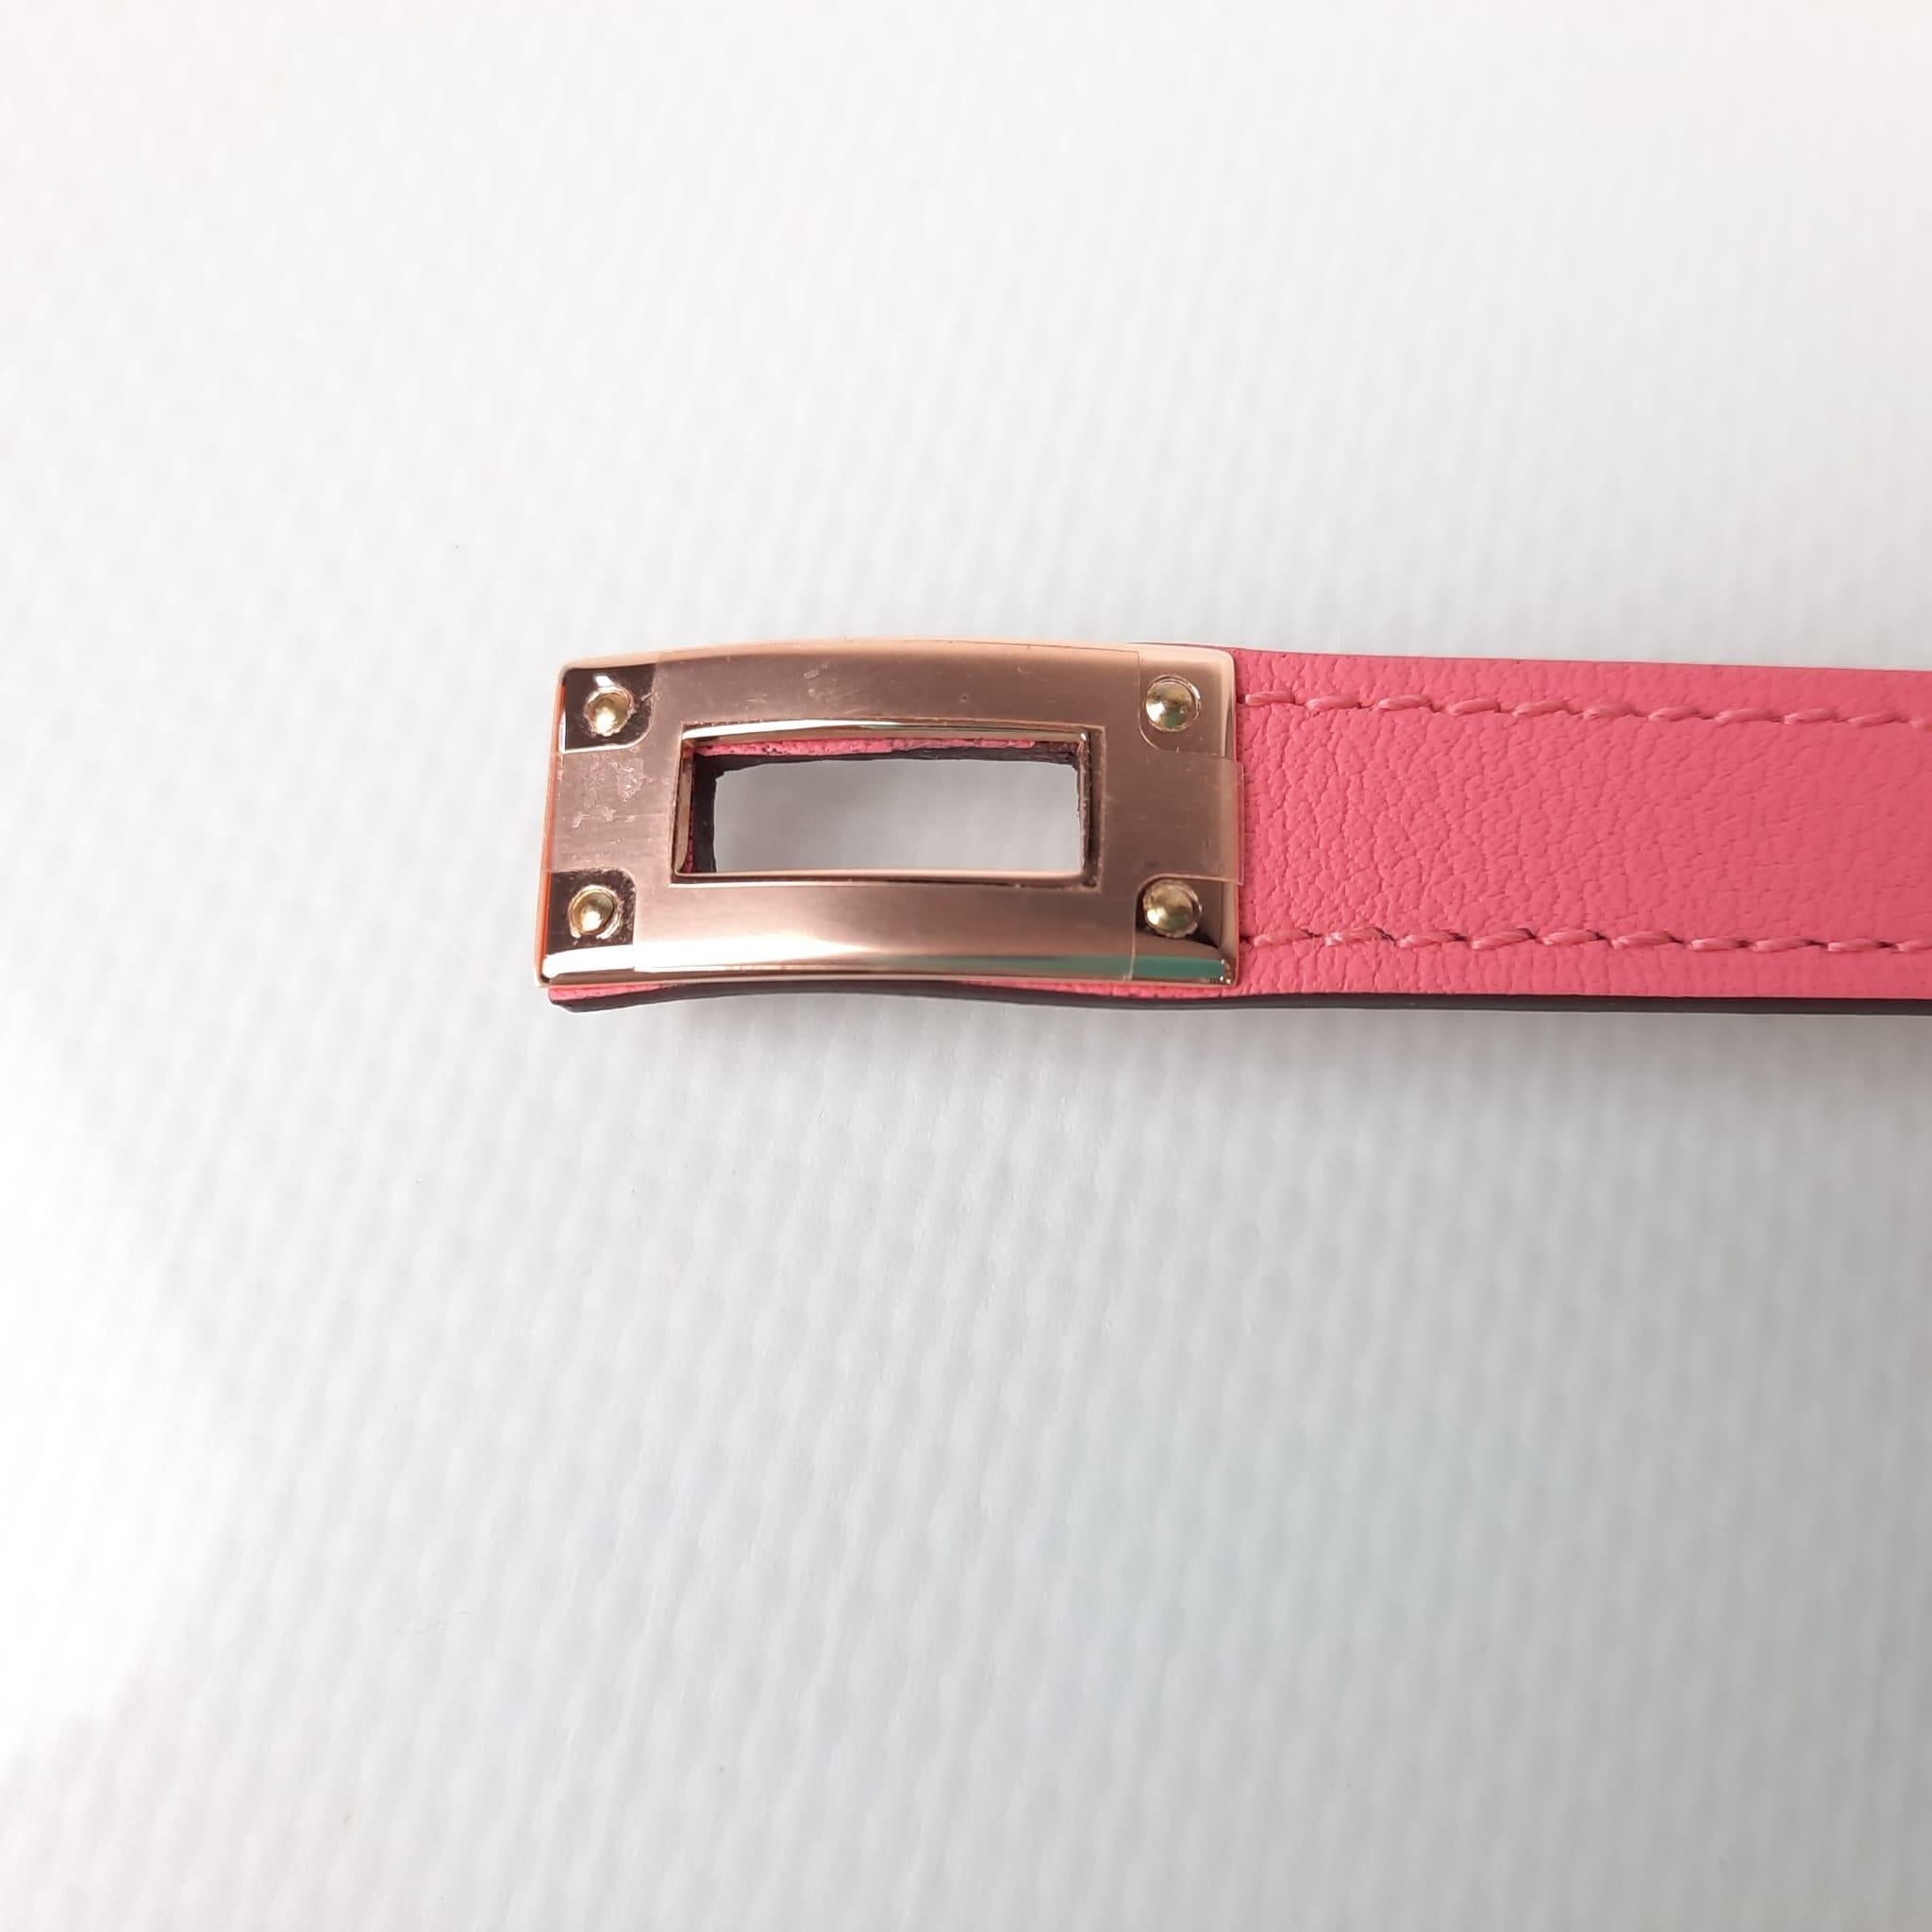 Größe T2. Vorgetragen, nie benutzt.  Doppeltes Tour-Armband aus Swift-Kalbsleder mit Futter aus Zermatter Kalbsleder und rosévergoldetem Kelly-Verschluss. Handgelenkgröße von 14,5 bis 15,5 cm
Breite des Leders: 1.3 cm